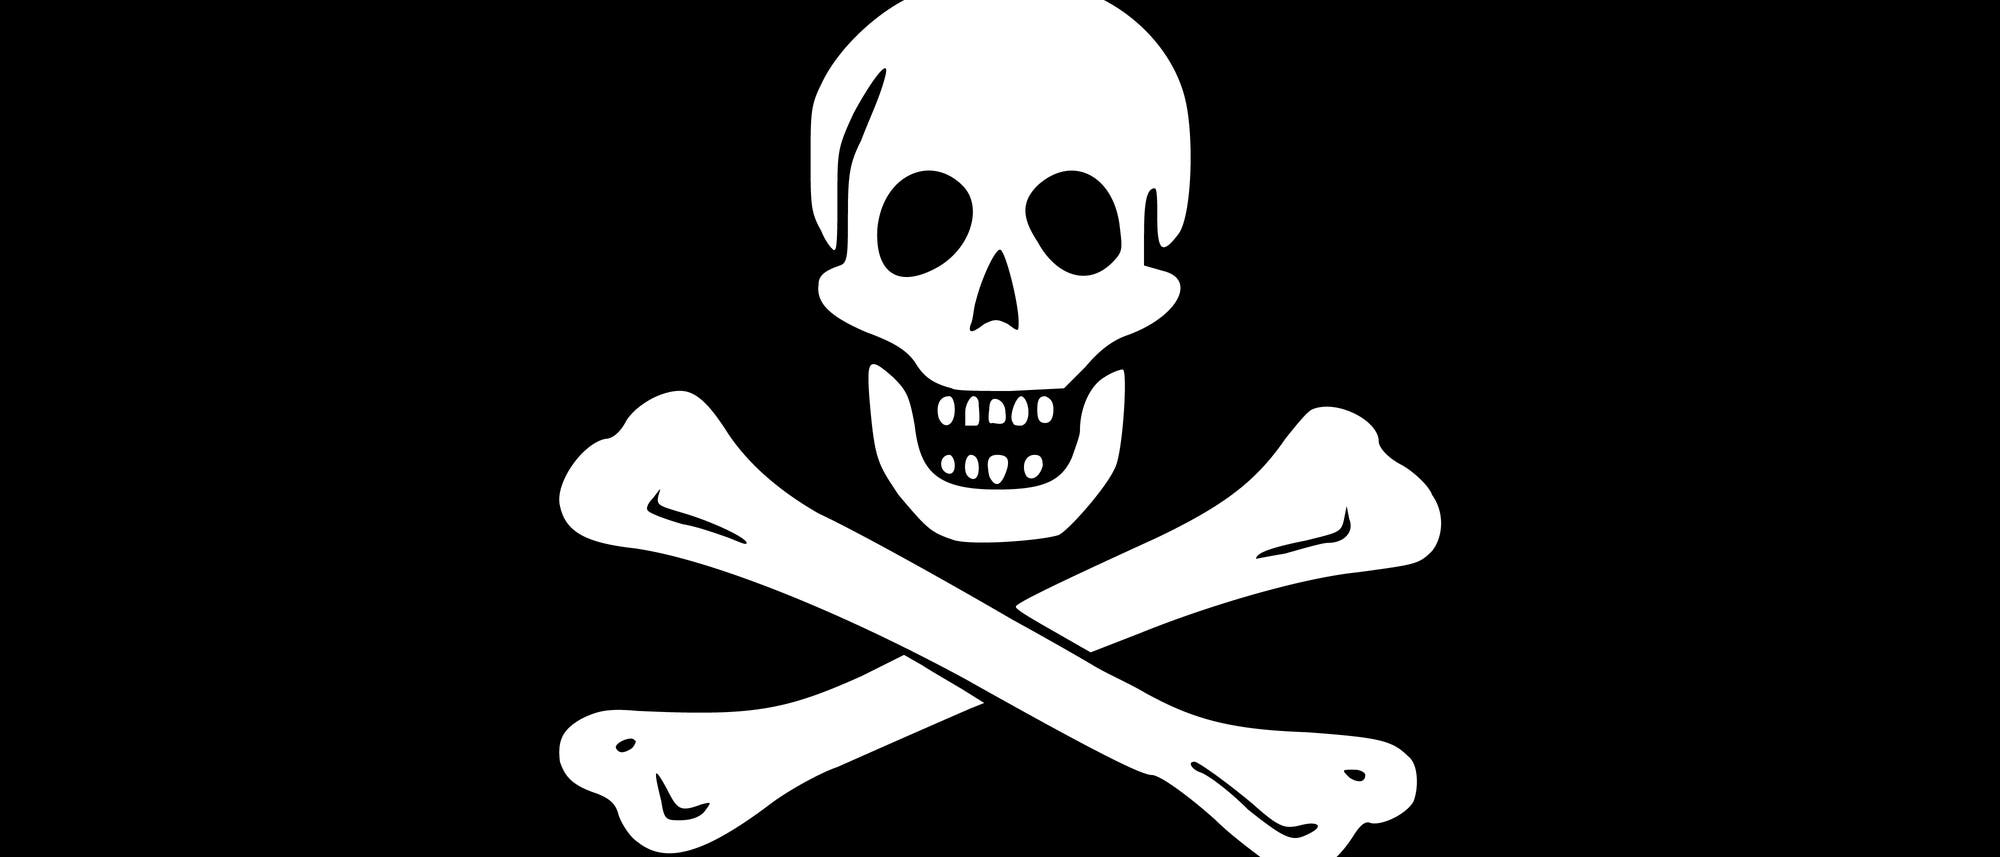 Totenkopfflagge: weißer Schädel mit darunter gekreuzten Beinknochen auf schwarzem Grund